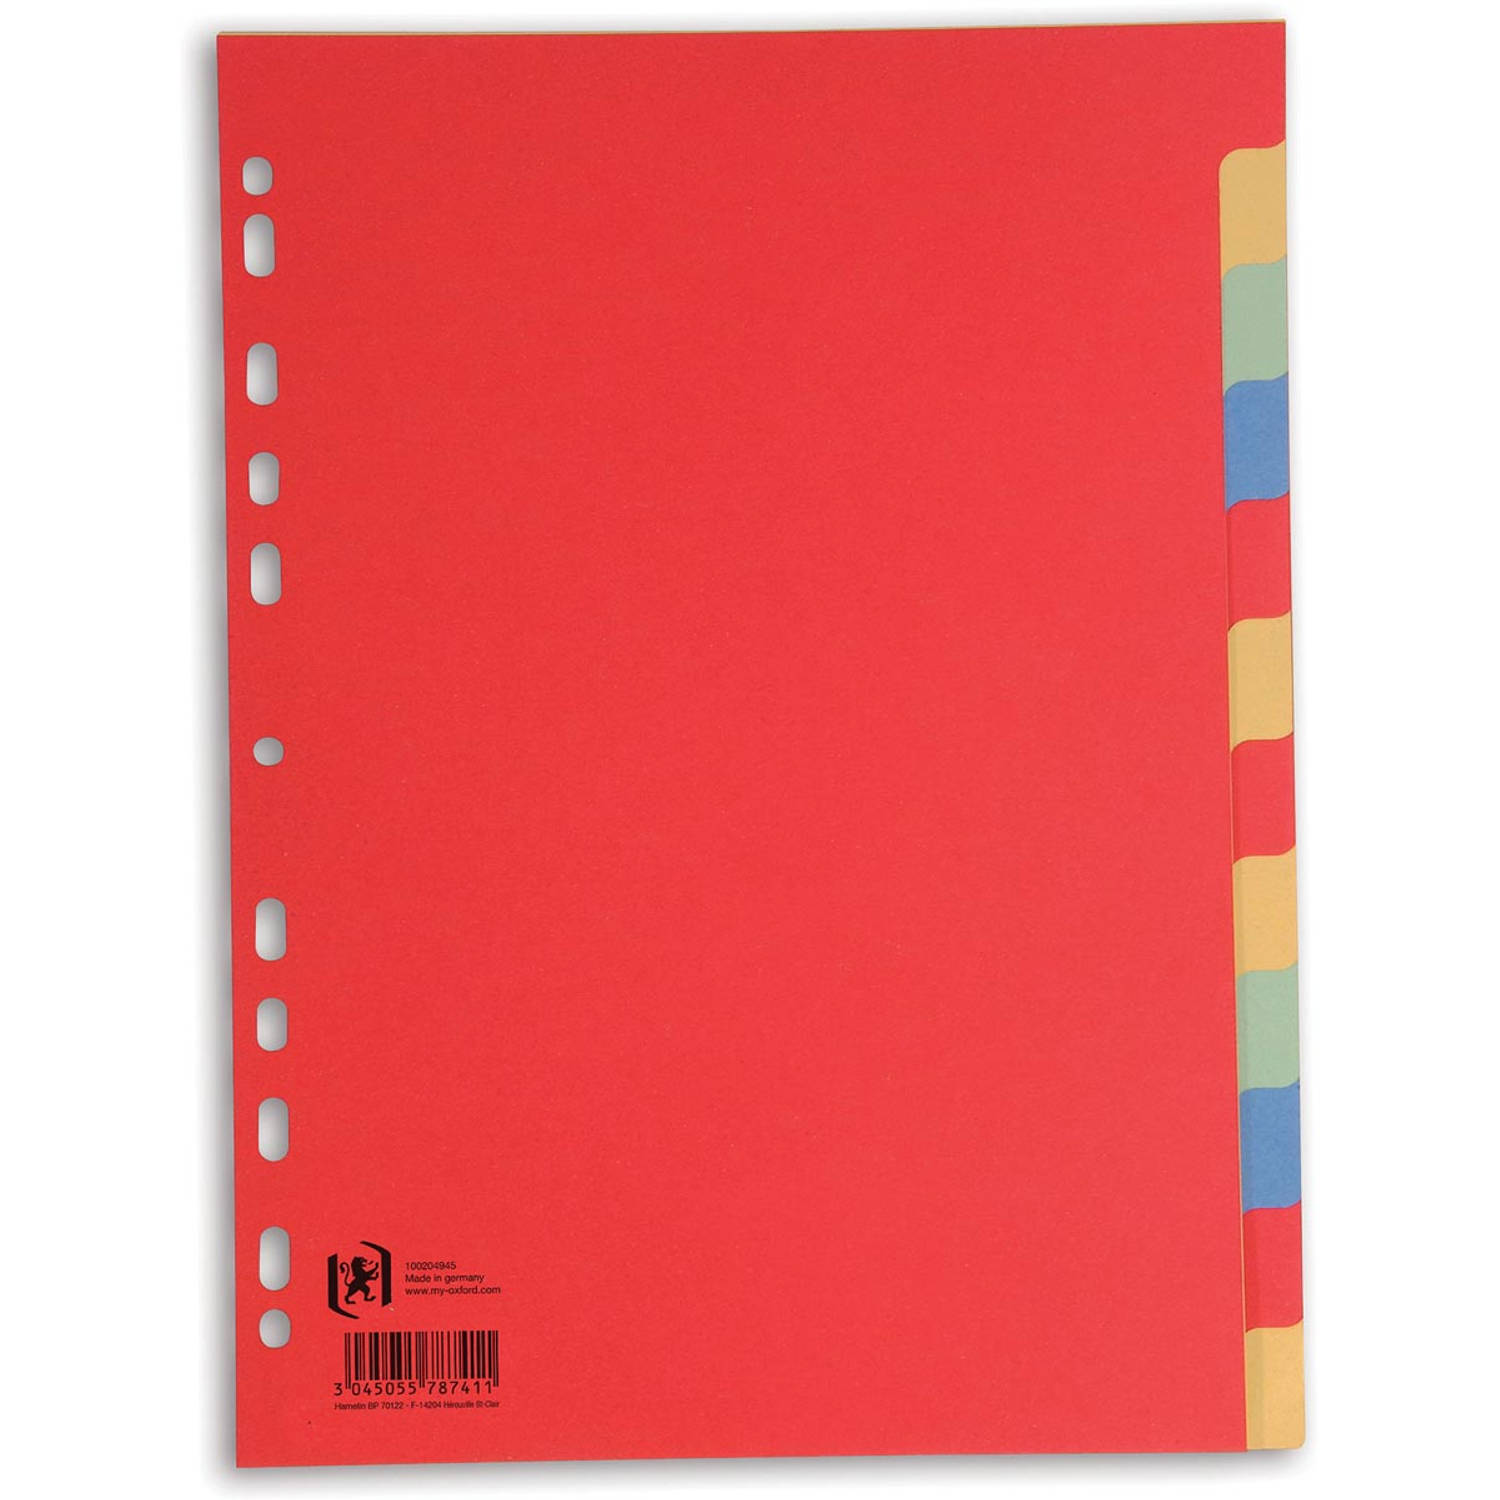 OXFORD tabbladen, formaat A4, uit karton, onbedrukt, 11-gaatsperforatie, geassorteerde kleuren, 12 tabs 50 stuks